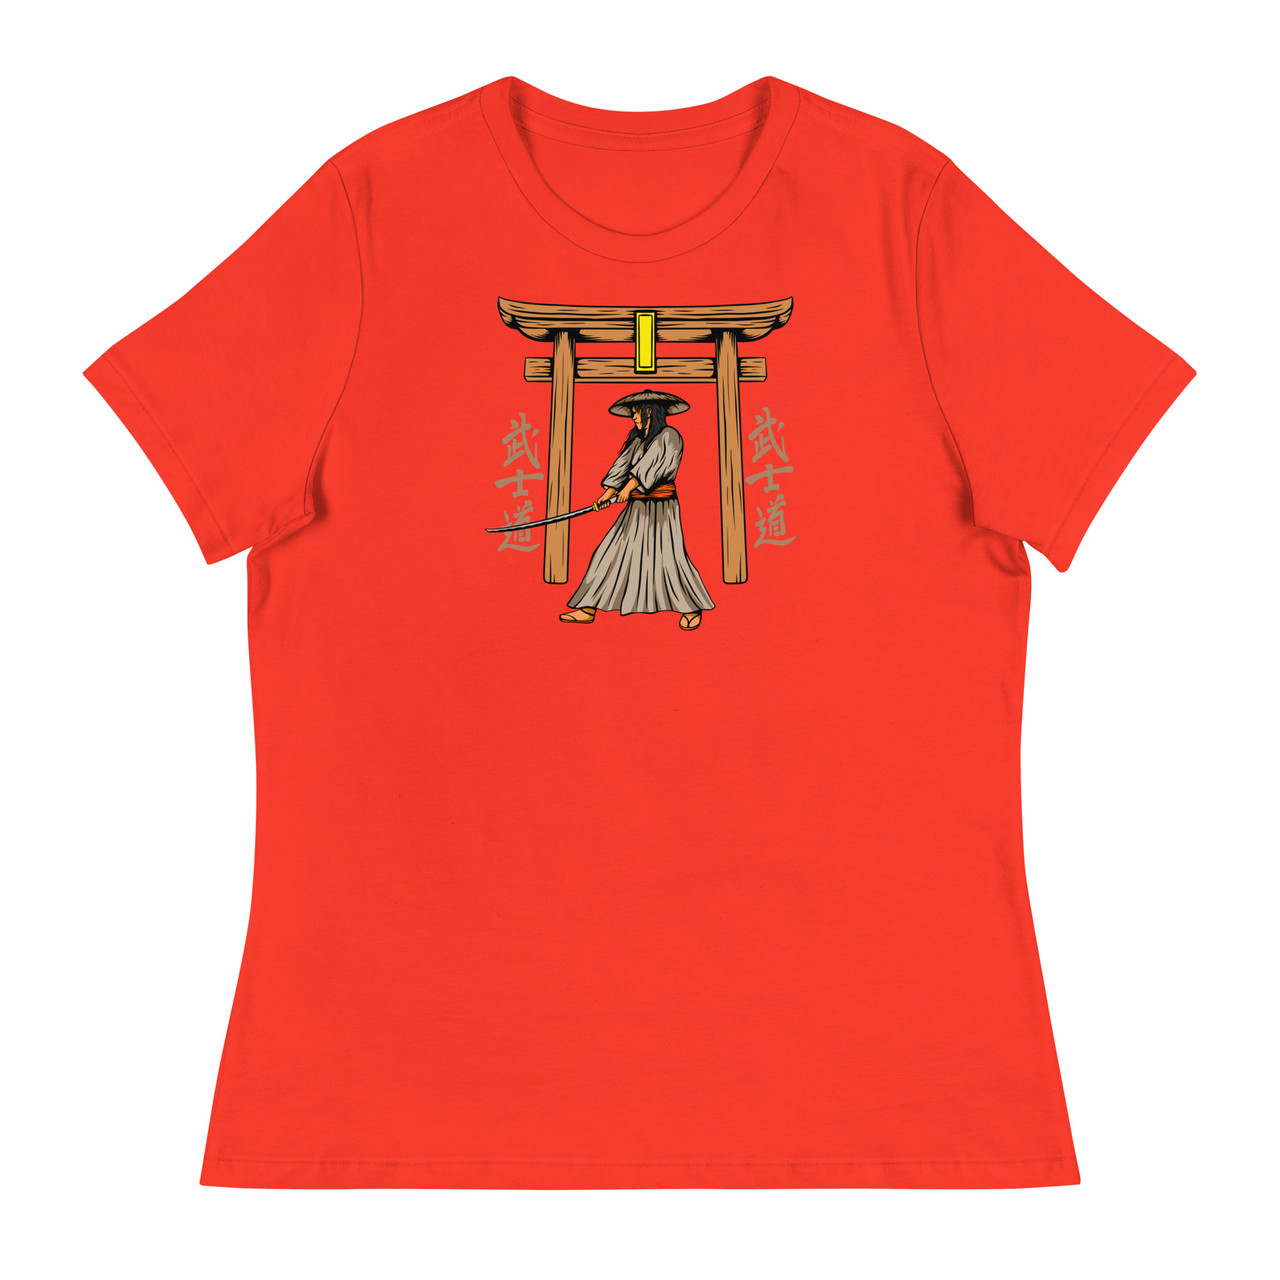 Samurai 10 Women's Relaxed T-Shirt - Bella + Canvas 6400 